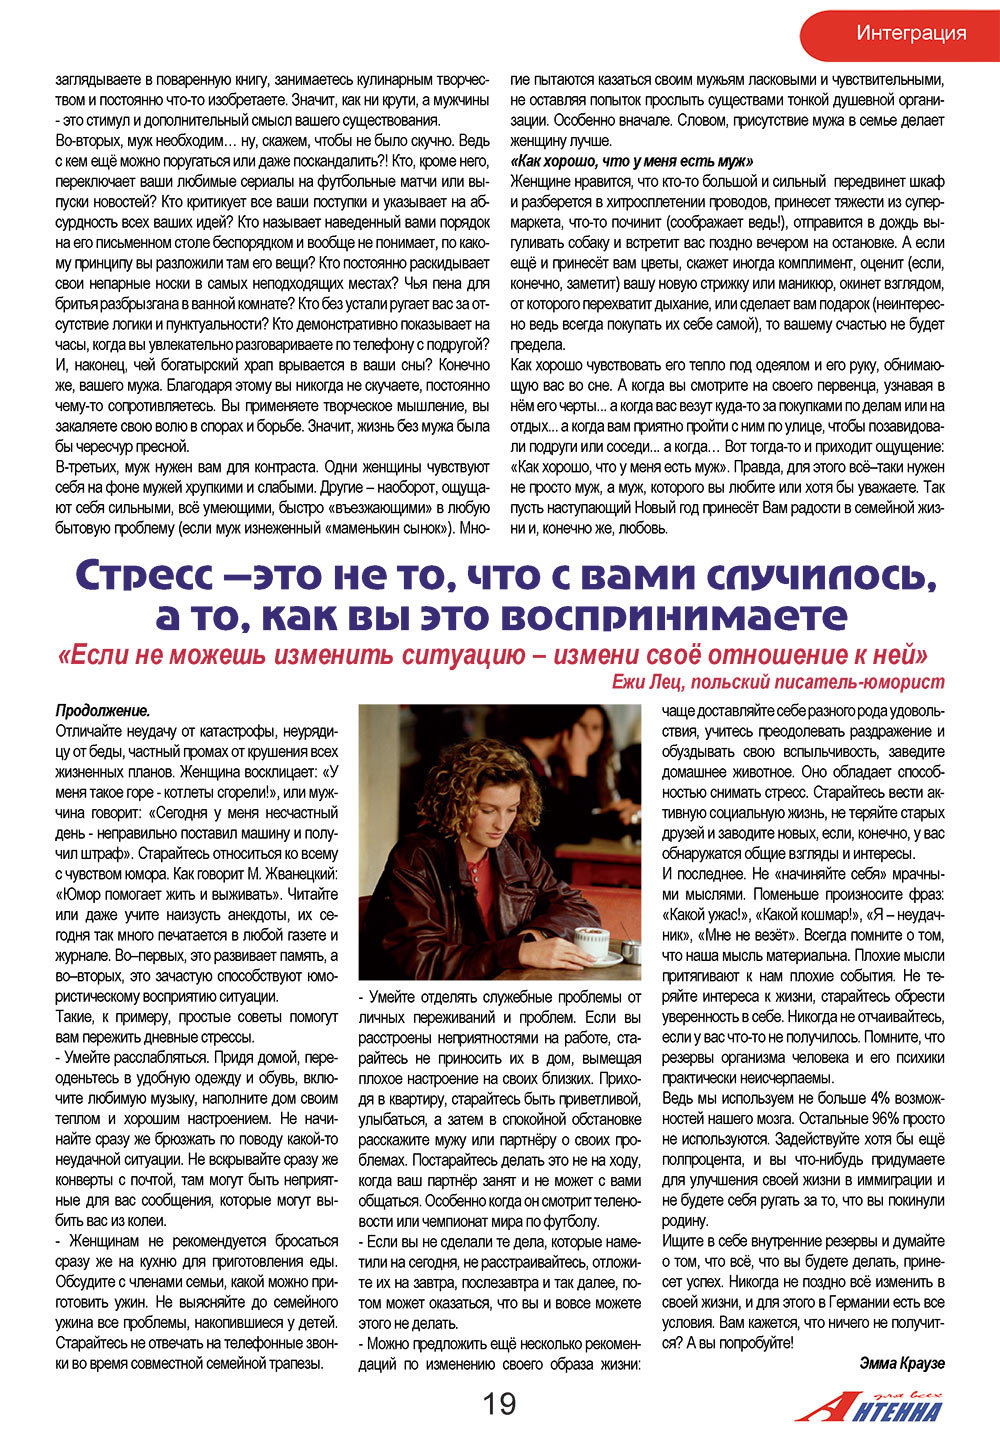 Антенна, журнал. 2008 №12 стр.19